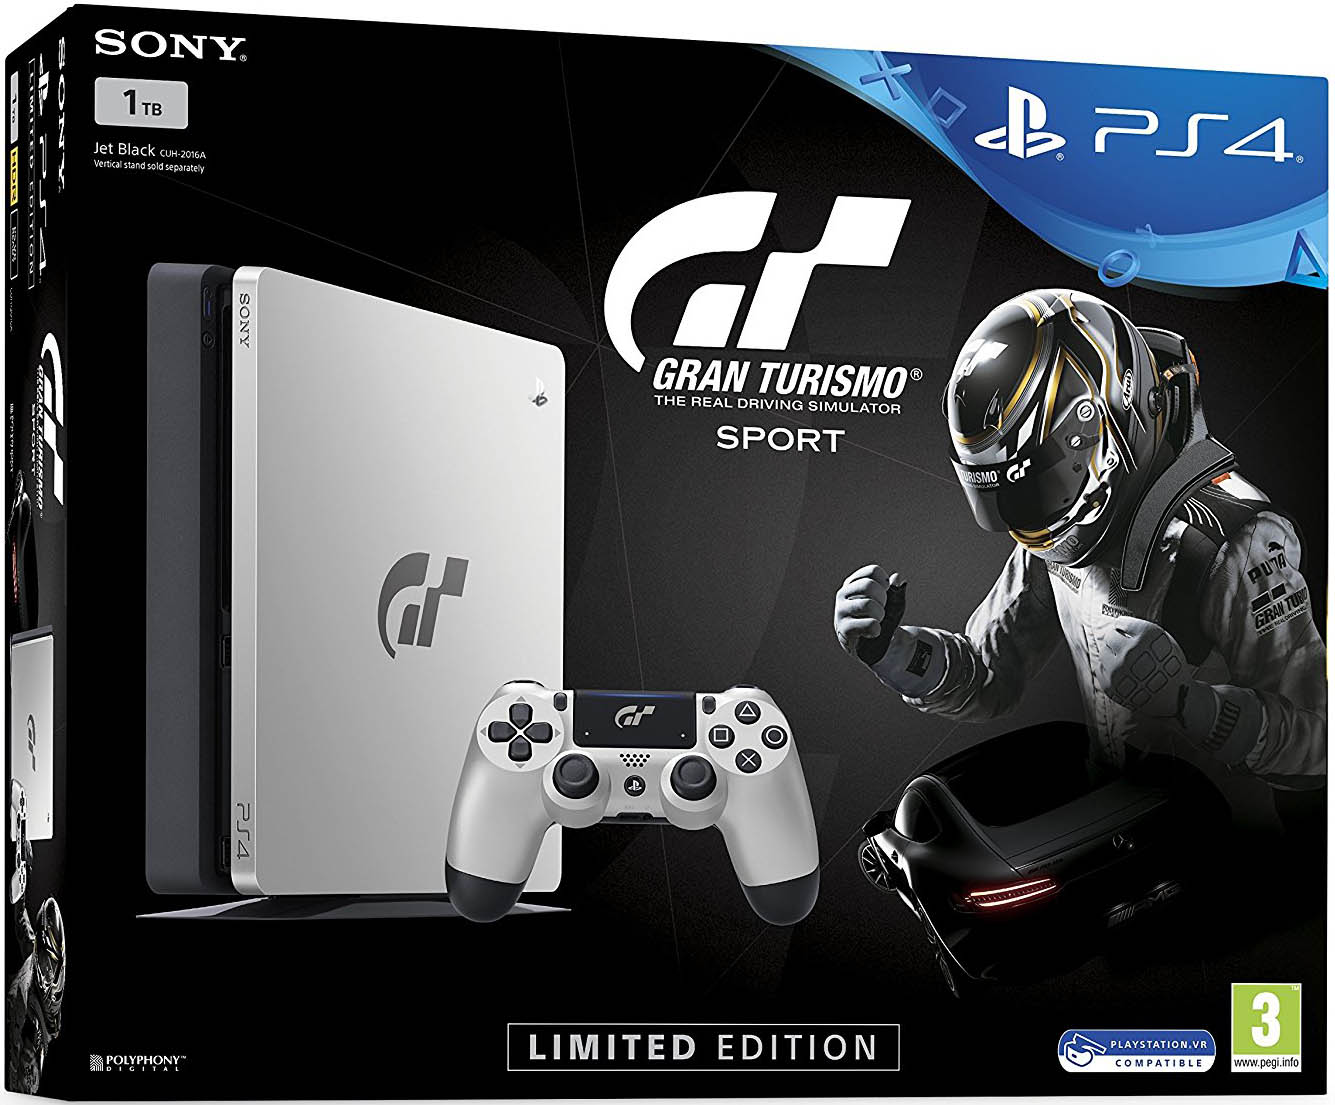 PlayStation 4 Limited Edition издание в Европе с игрой Gran Turismo Sport